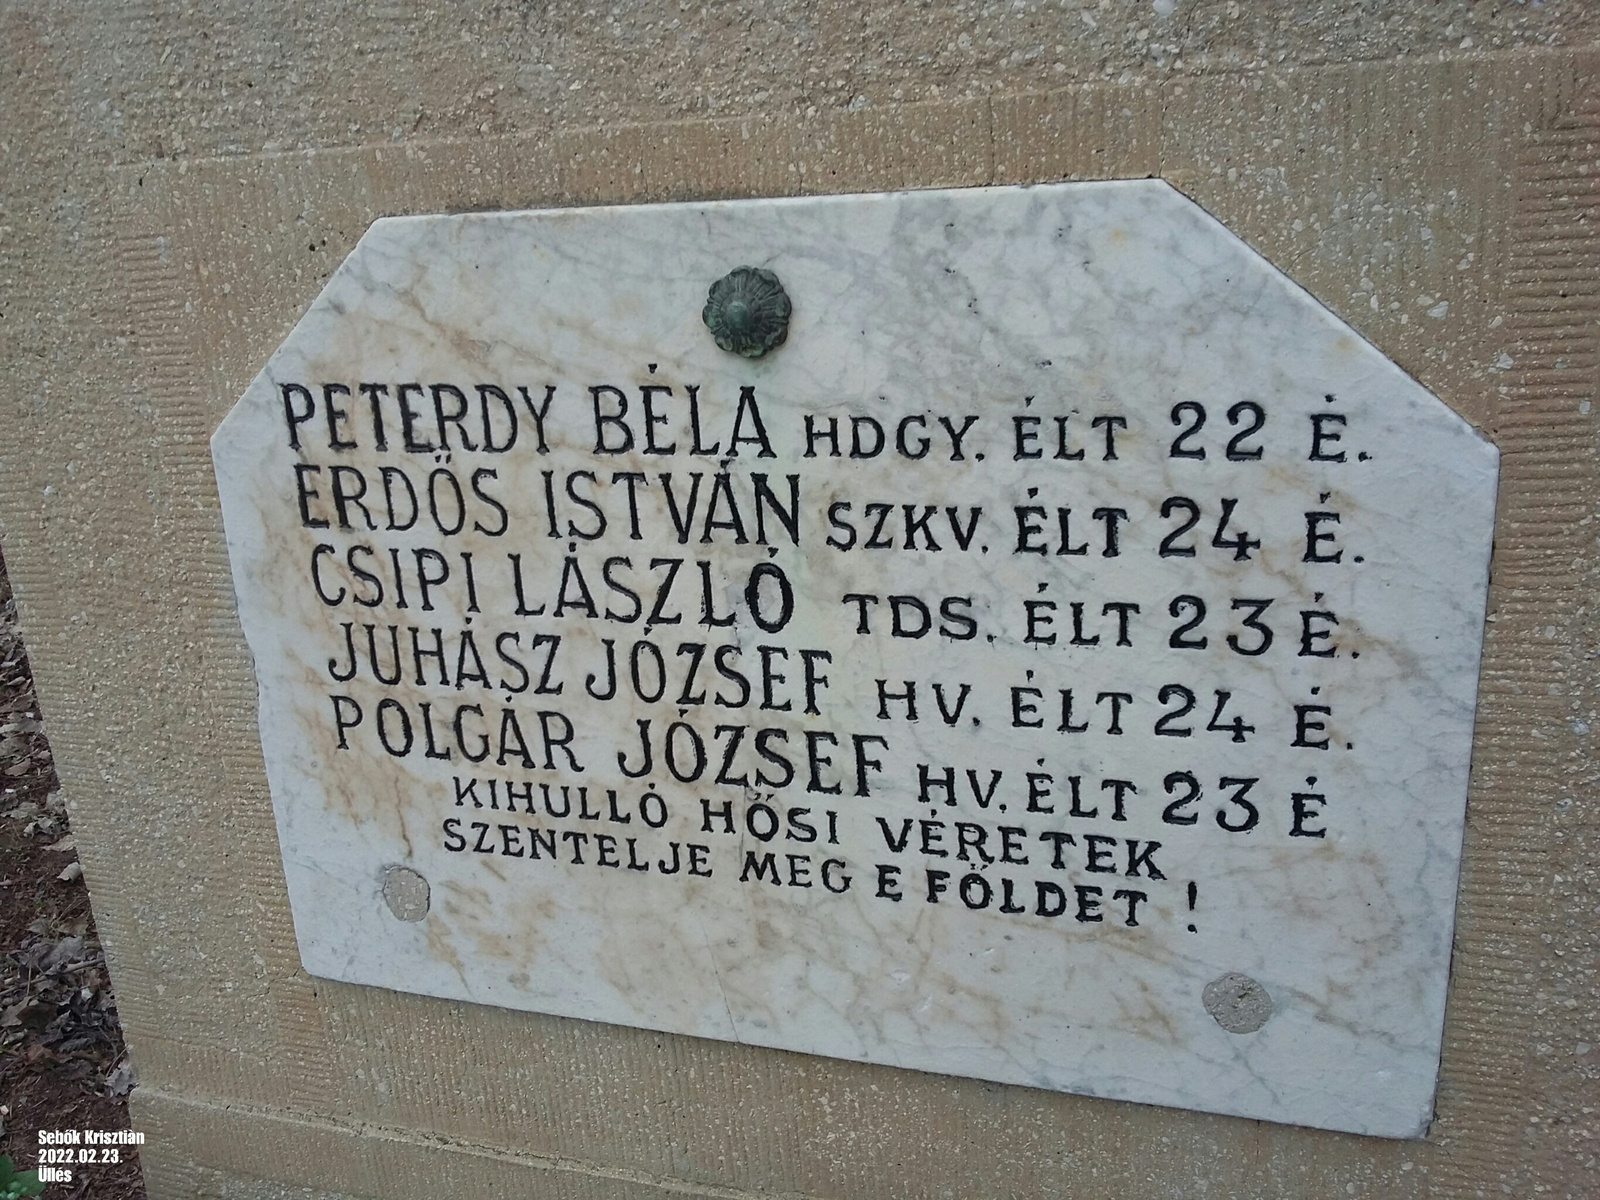 2.V.H-ban elesett katonâk nevei Üllésen az Àrpâd dűlőben.